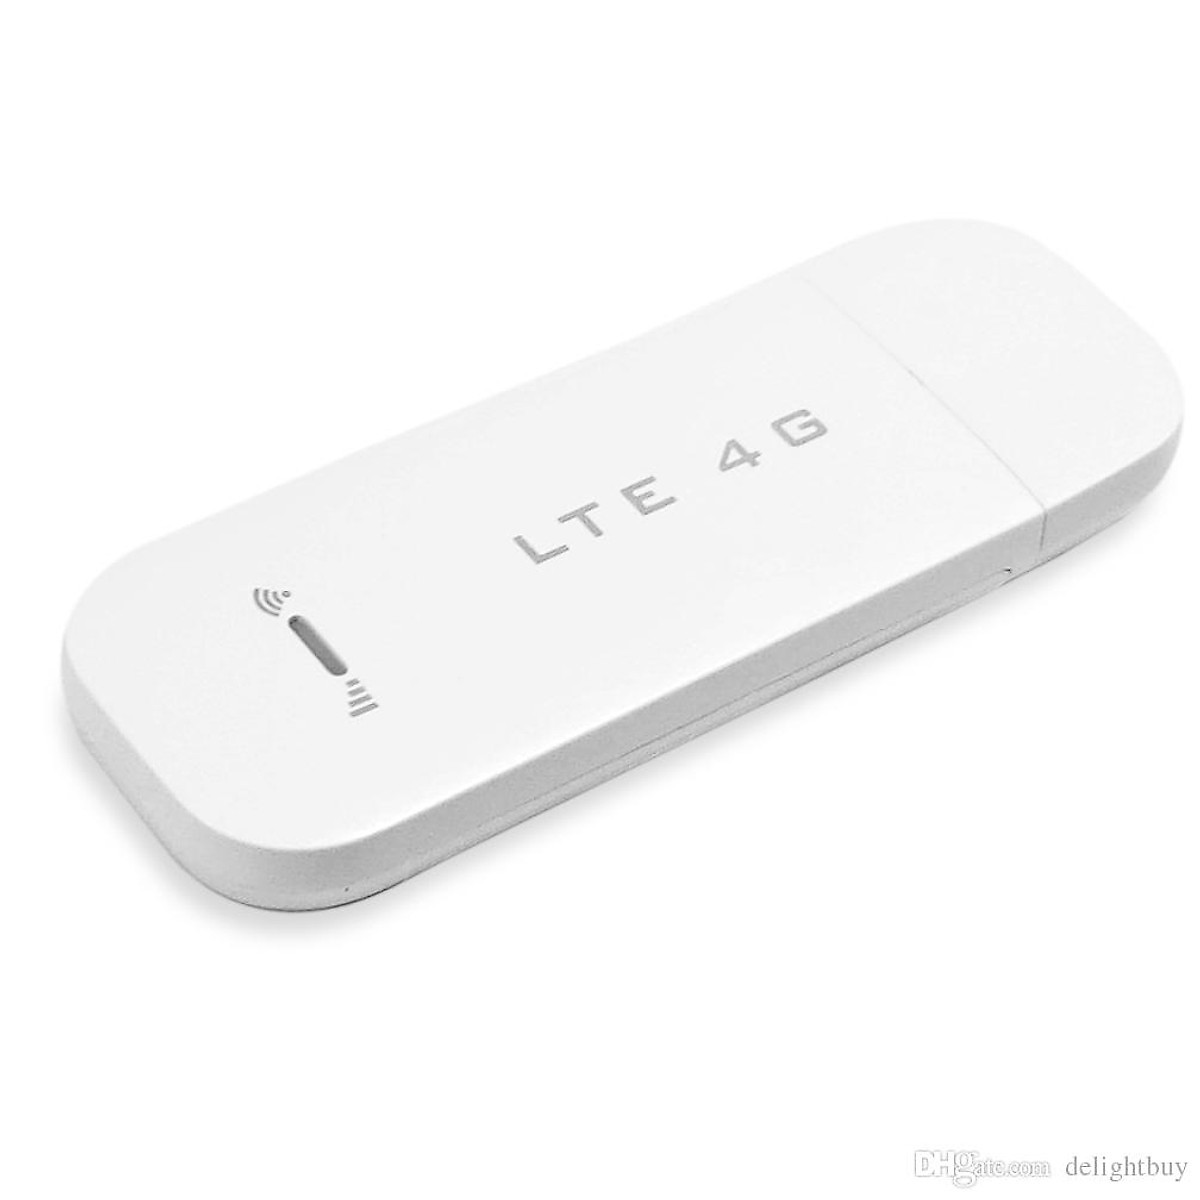 USB 4G LTE - Thiết bị phát sóng wifi từ sim Điện Thoại 4G (3 in 1: Dcom 4G + Router Wifi + Access Point)